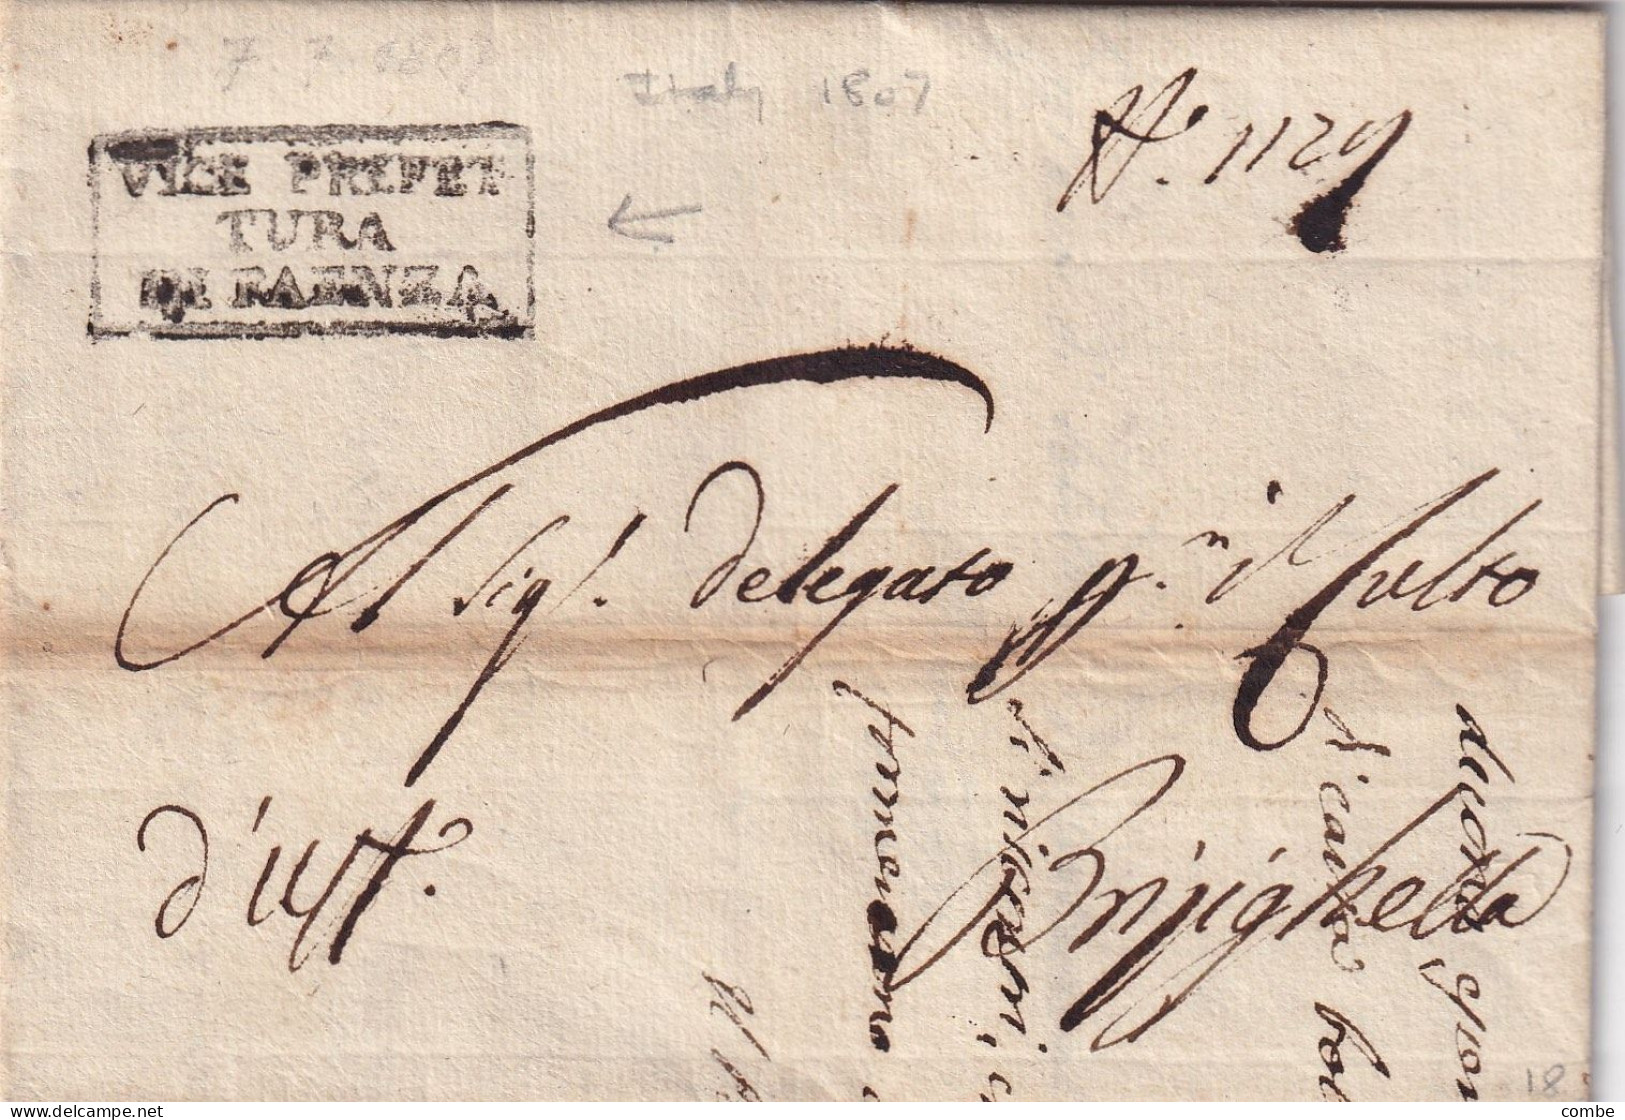 LETTERA ITALIA. 7 LUGLIO 1807. VICE PREFET/TURA/DE FAENZA. CARLO MANTEGAZZA. DEPARTIMENTO DEL RUBICONE. REGNO - 1. ...-1850 Prephilately